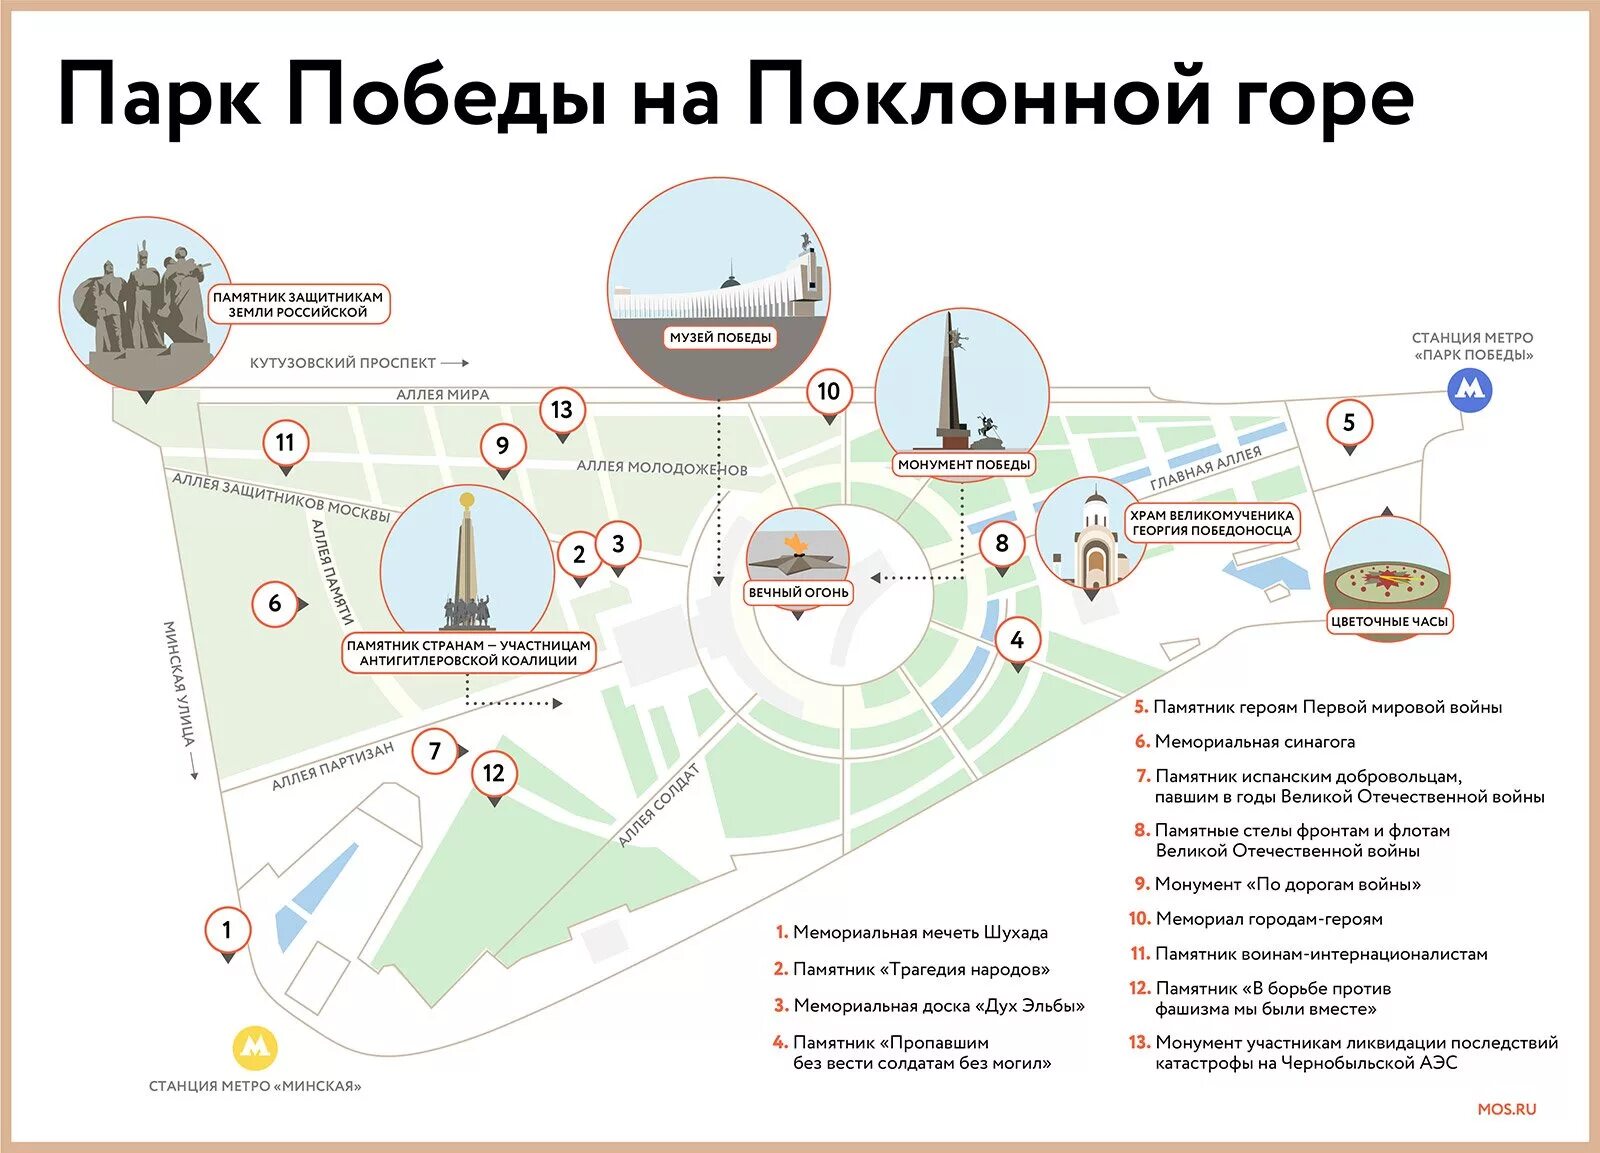 Почему называют парка. Поклонная гора план парка. Схема парка Победы в Москве. Парк Победы на Поклонной горе схема парка. План схема поклоннойигоры.